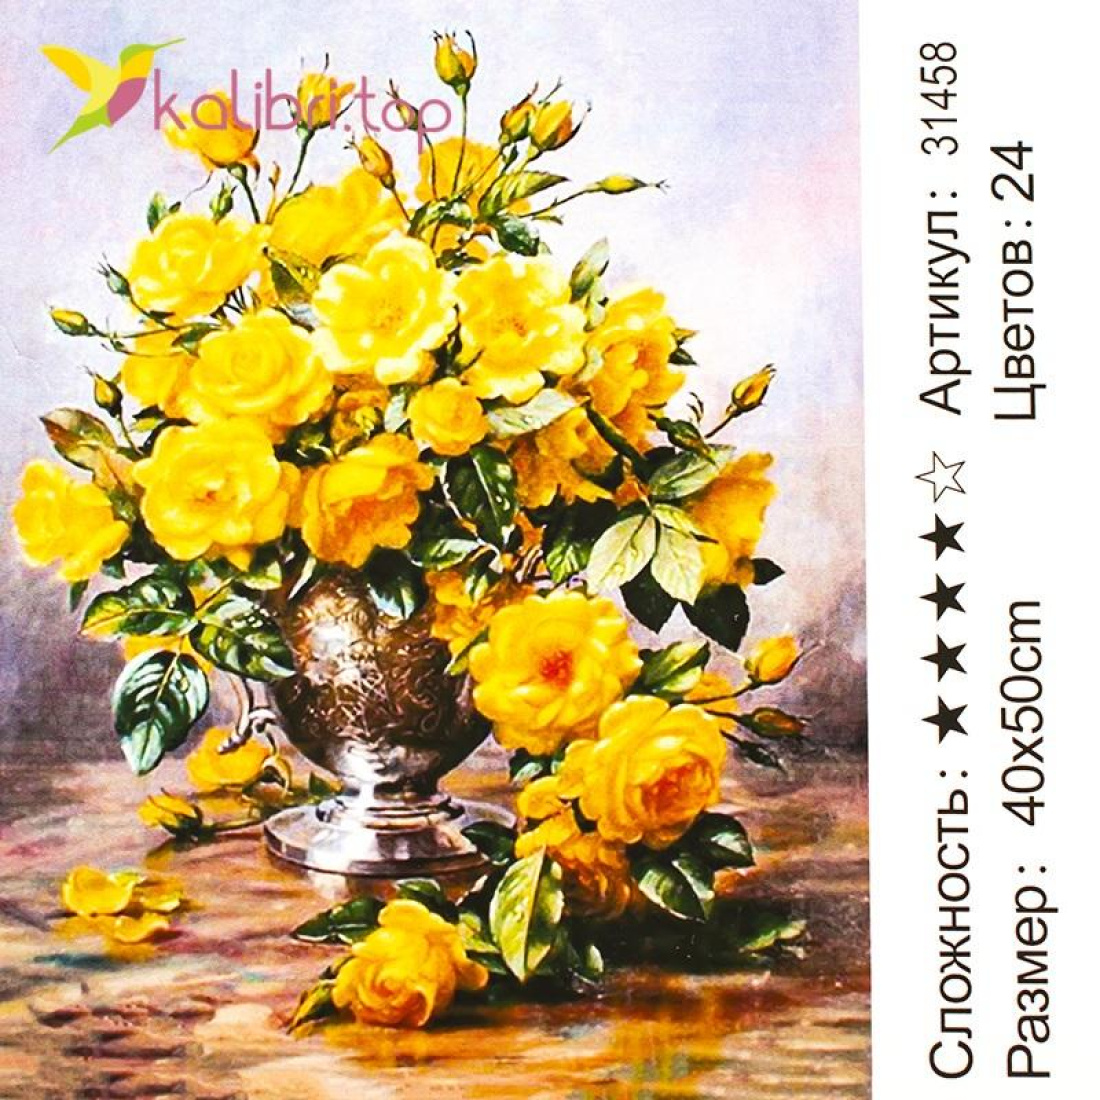 Малювання за номерами Жовті троянди 40*50 см оптом фото 01